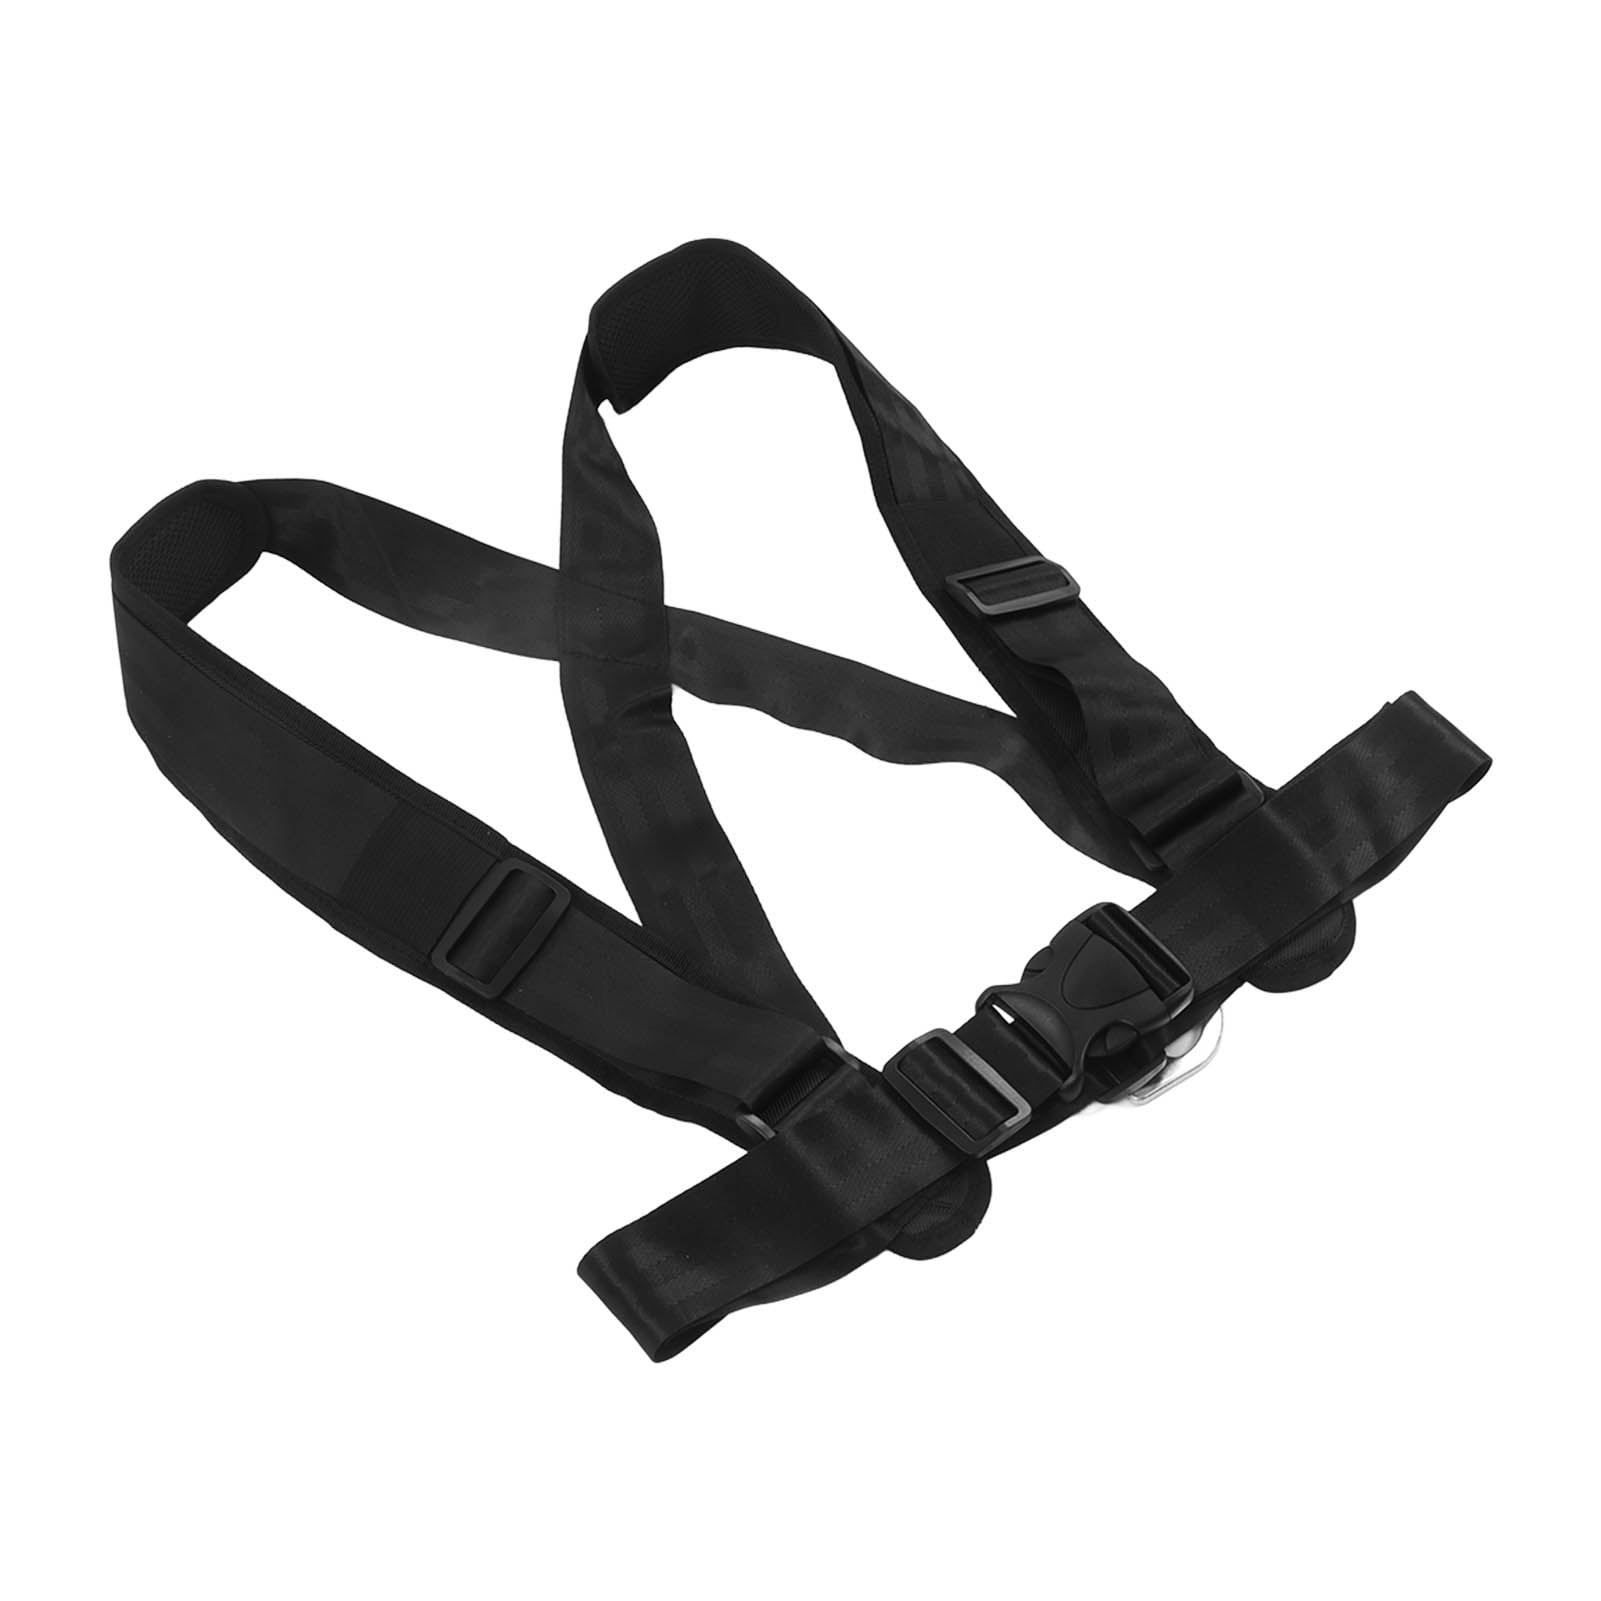 Nylon Sled Strap Tension Vest Sports Equipment Adjustable Black for Home Sled Shoulder Strap 